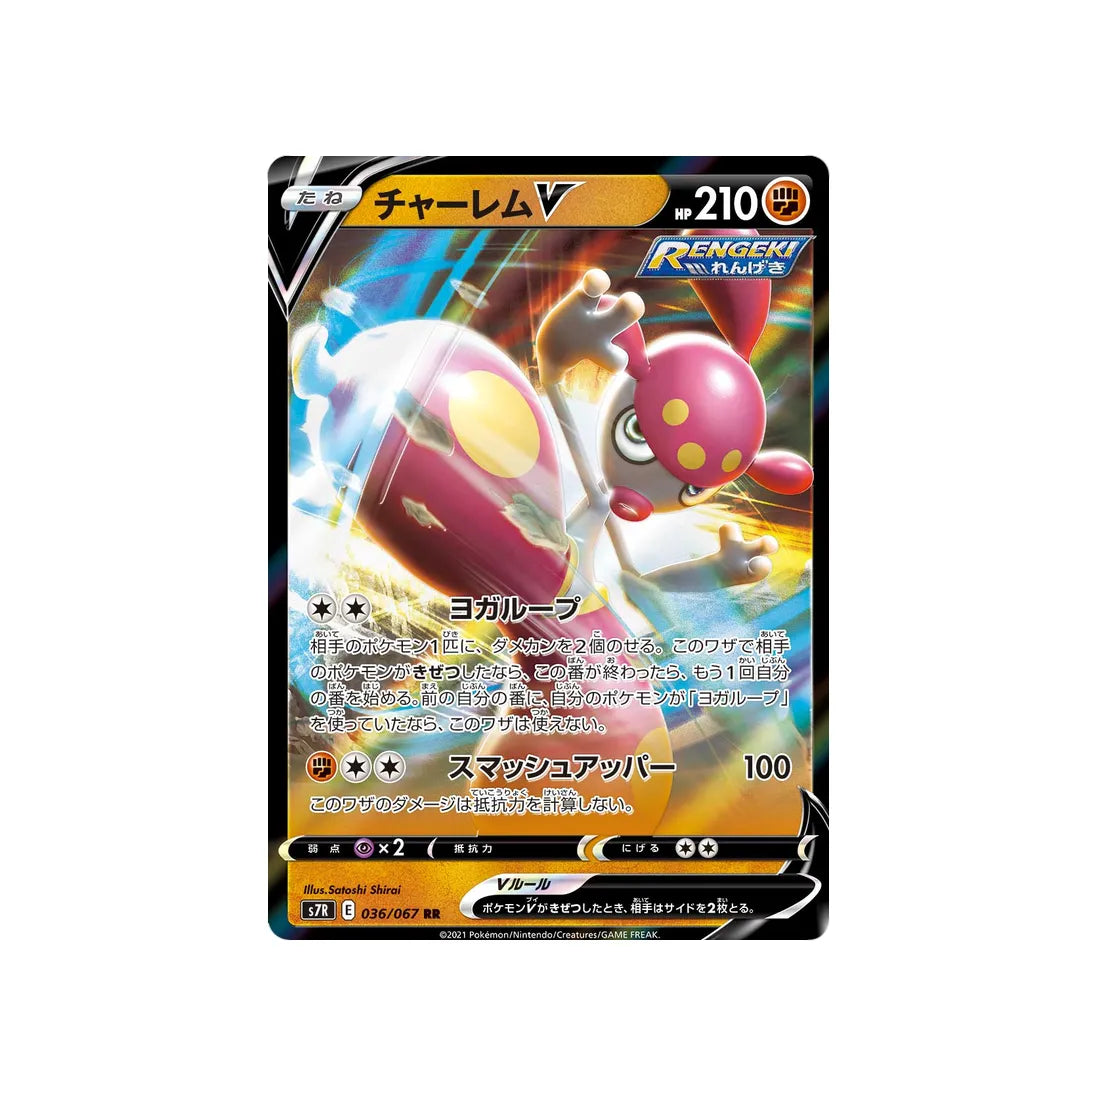 Carte Pokémon Blue Sky Stream S7R 036/067: Charmina V